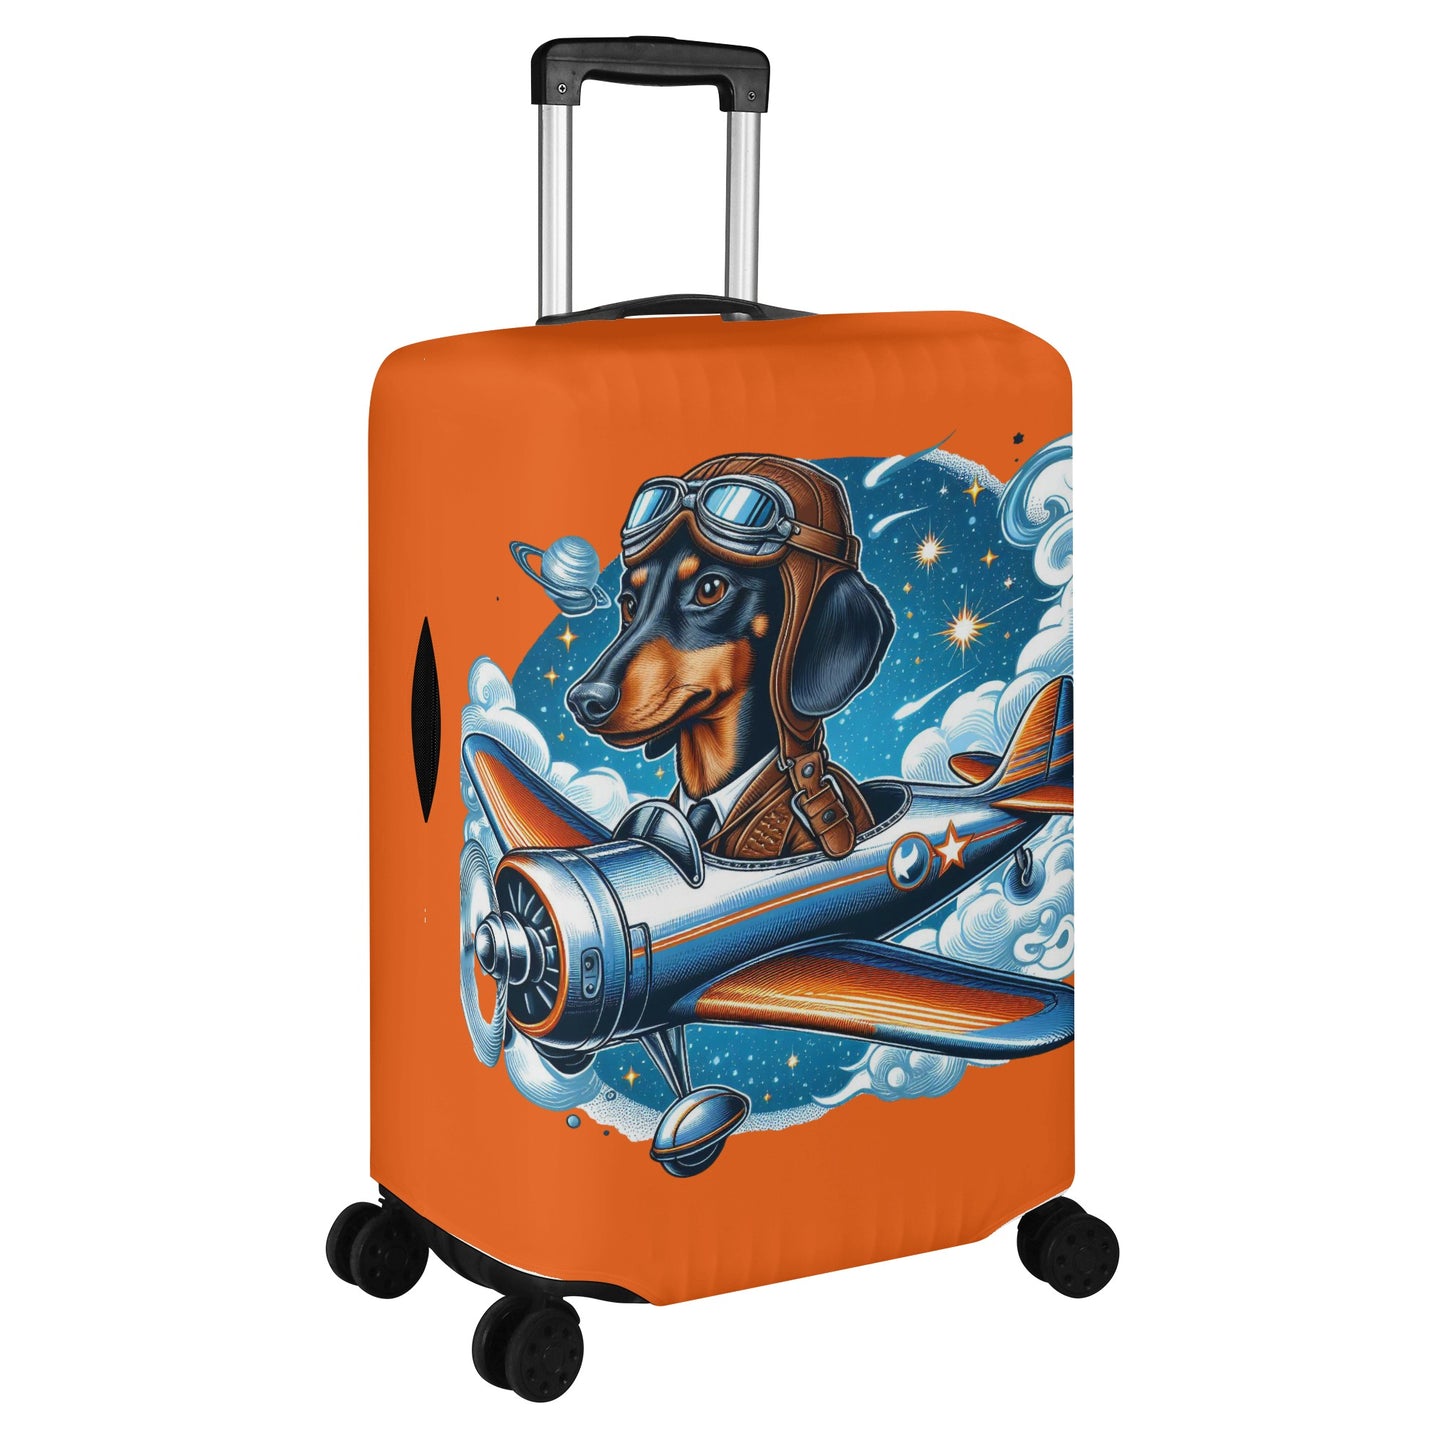 Cabana - Luggage Cover